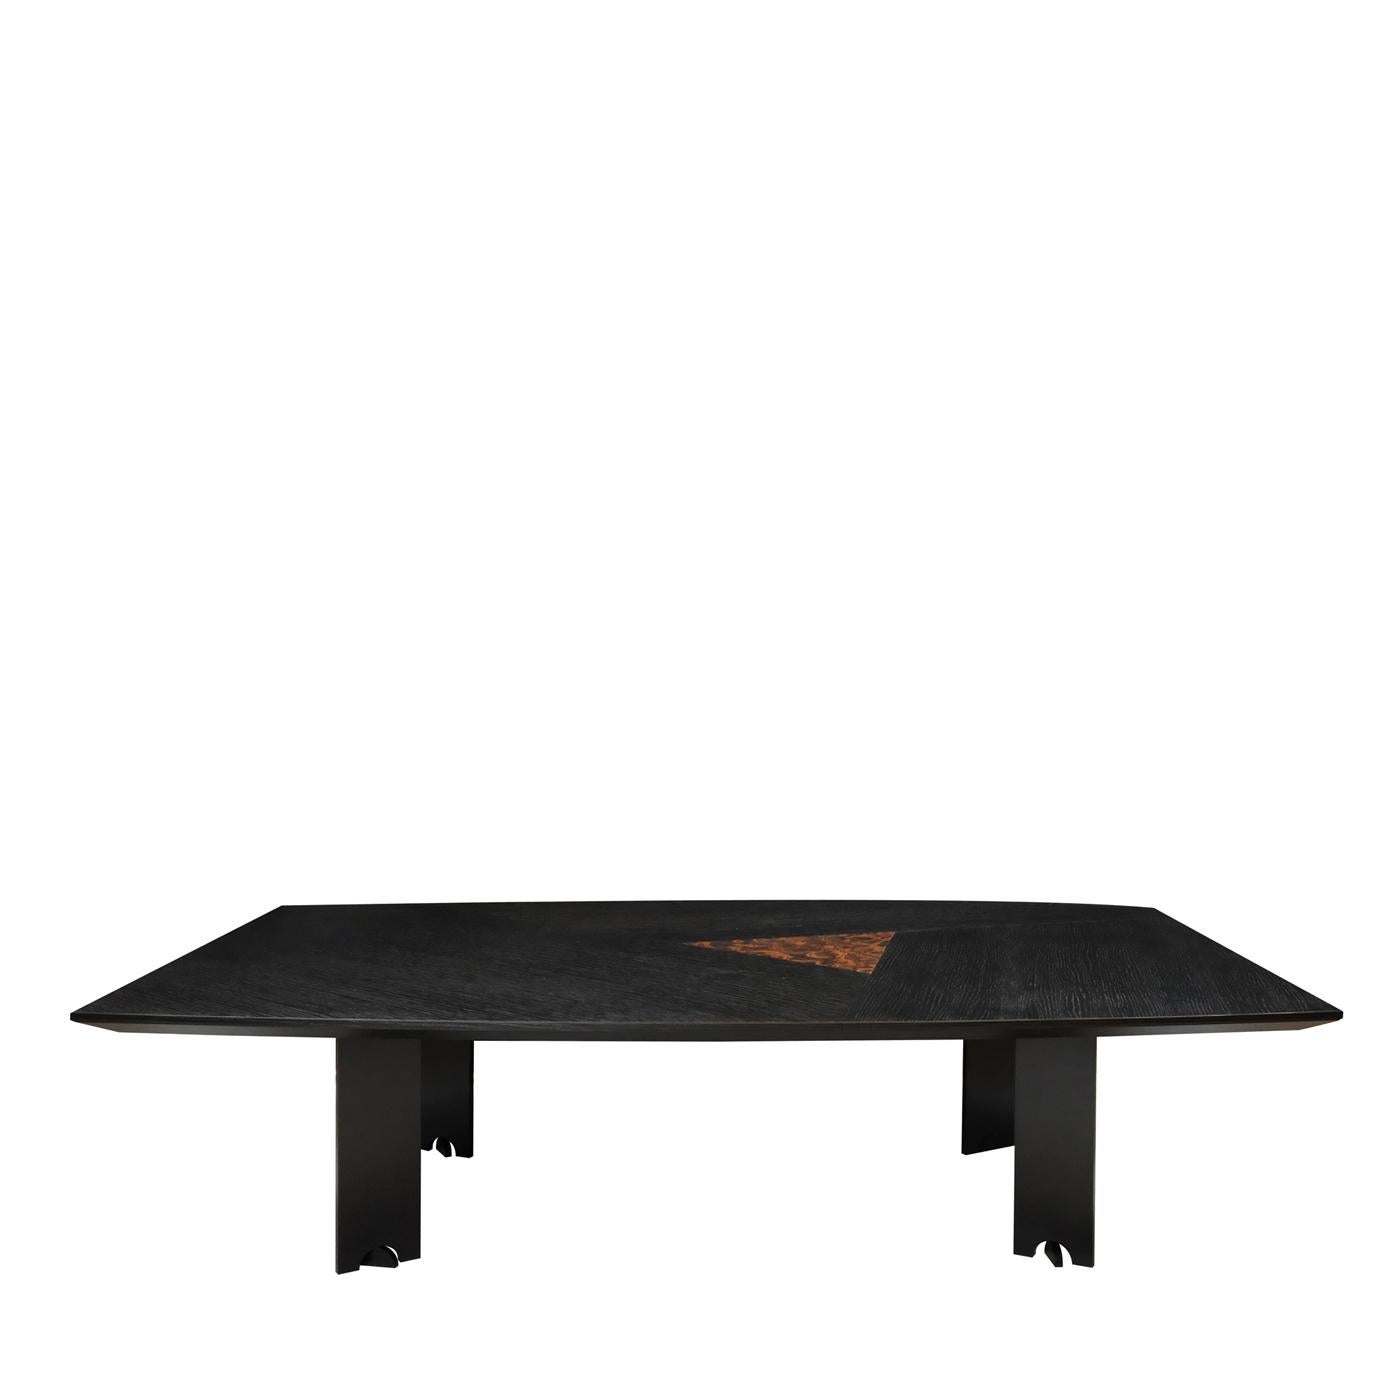 Pièce de décoration fonctionnelle intemporelle et non conventionnelle, cette table saisissante est fabriquée de manière exquise en chêne teinté en noir et présente une incrustation triangulaire en ébène sur le dessus. Fabriqués en métal avec un